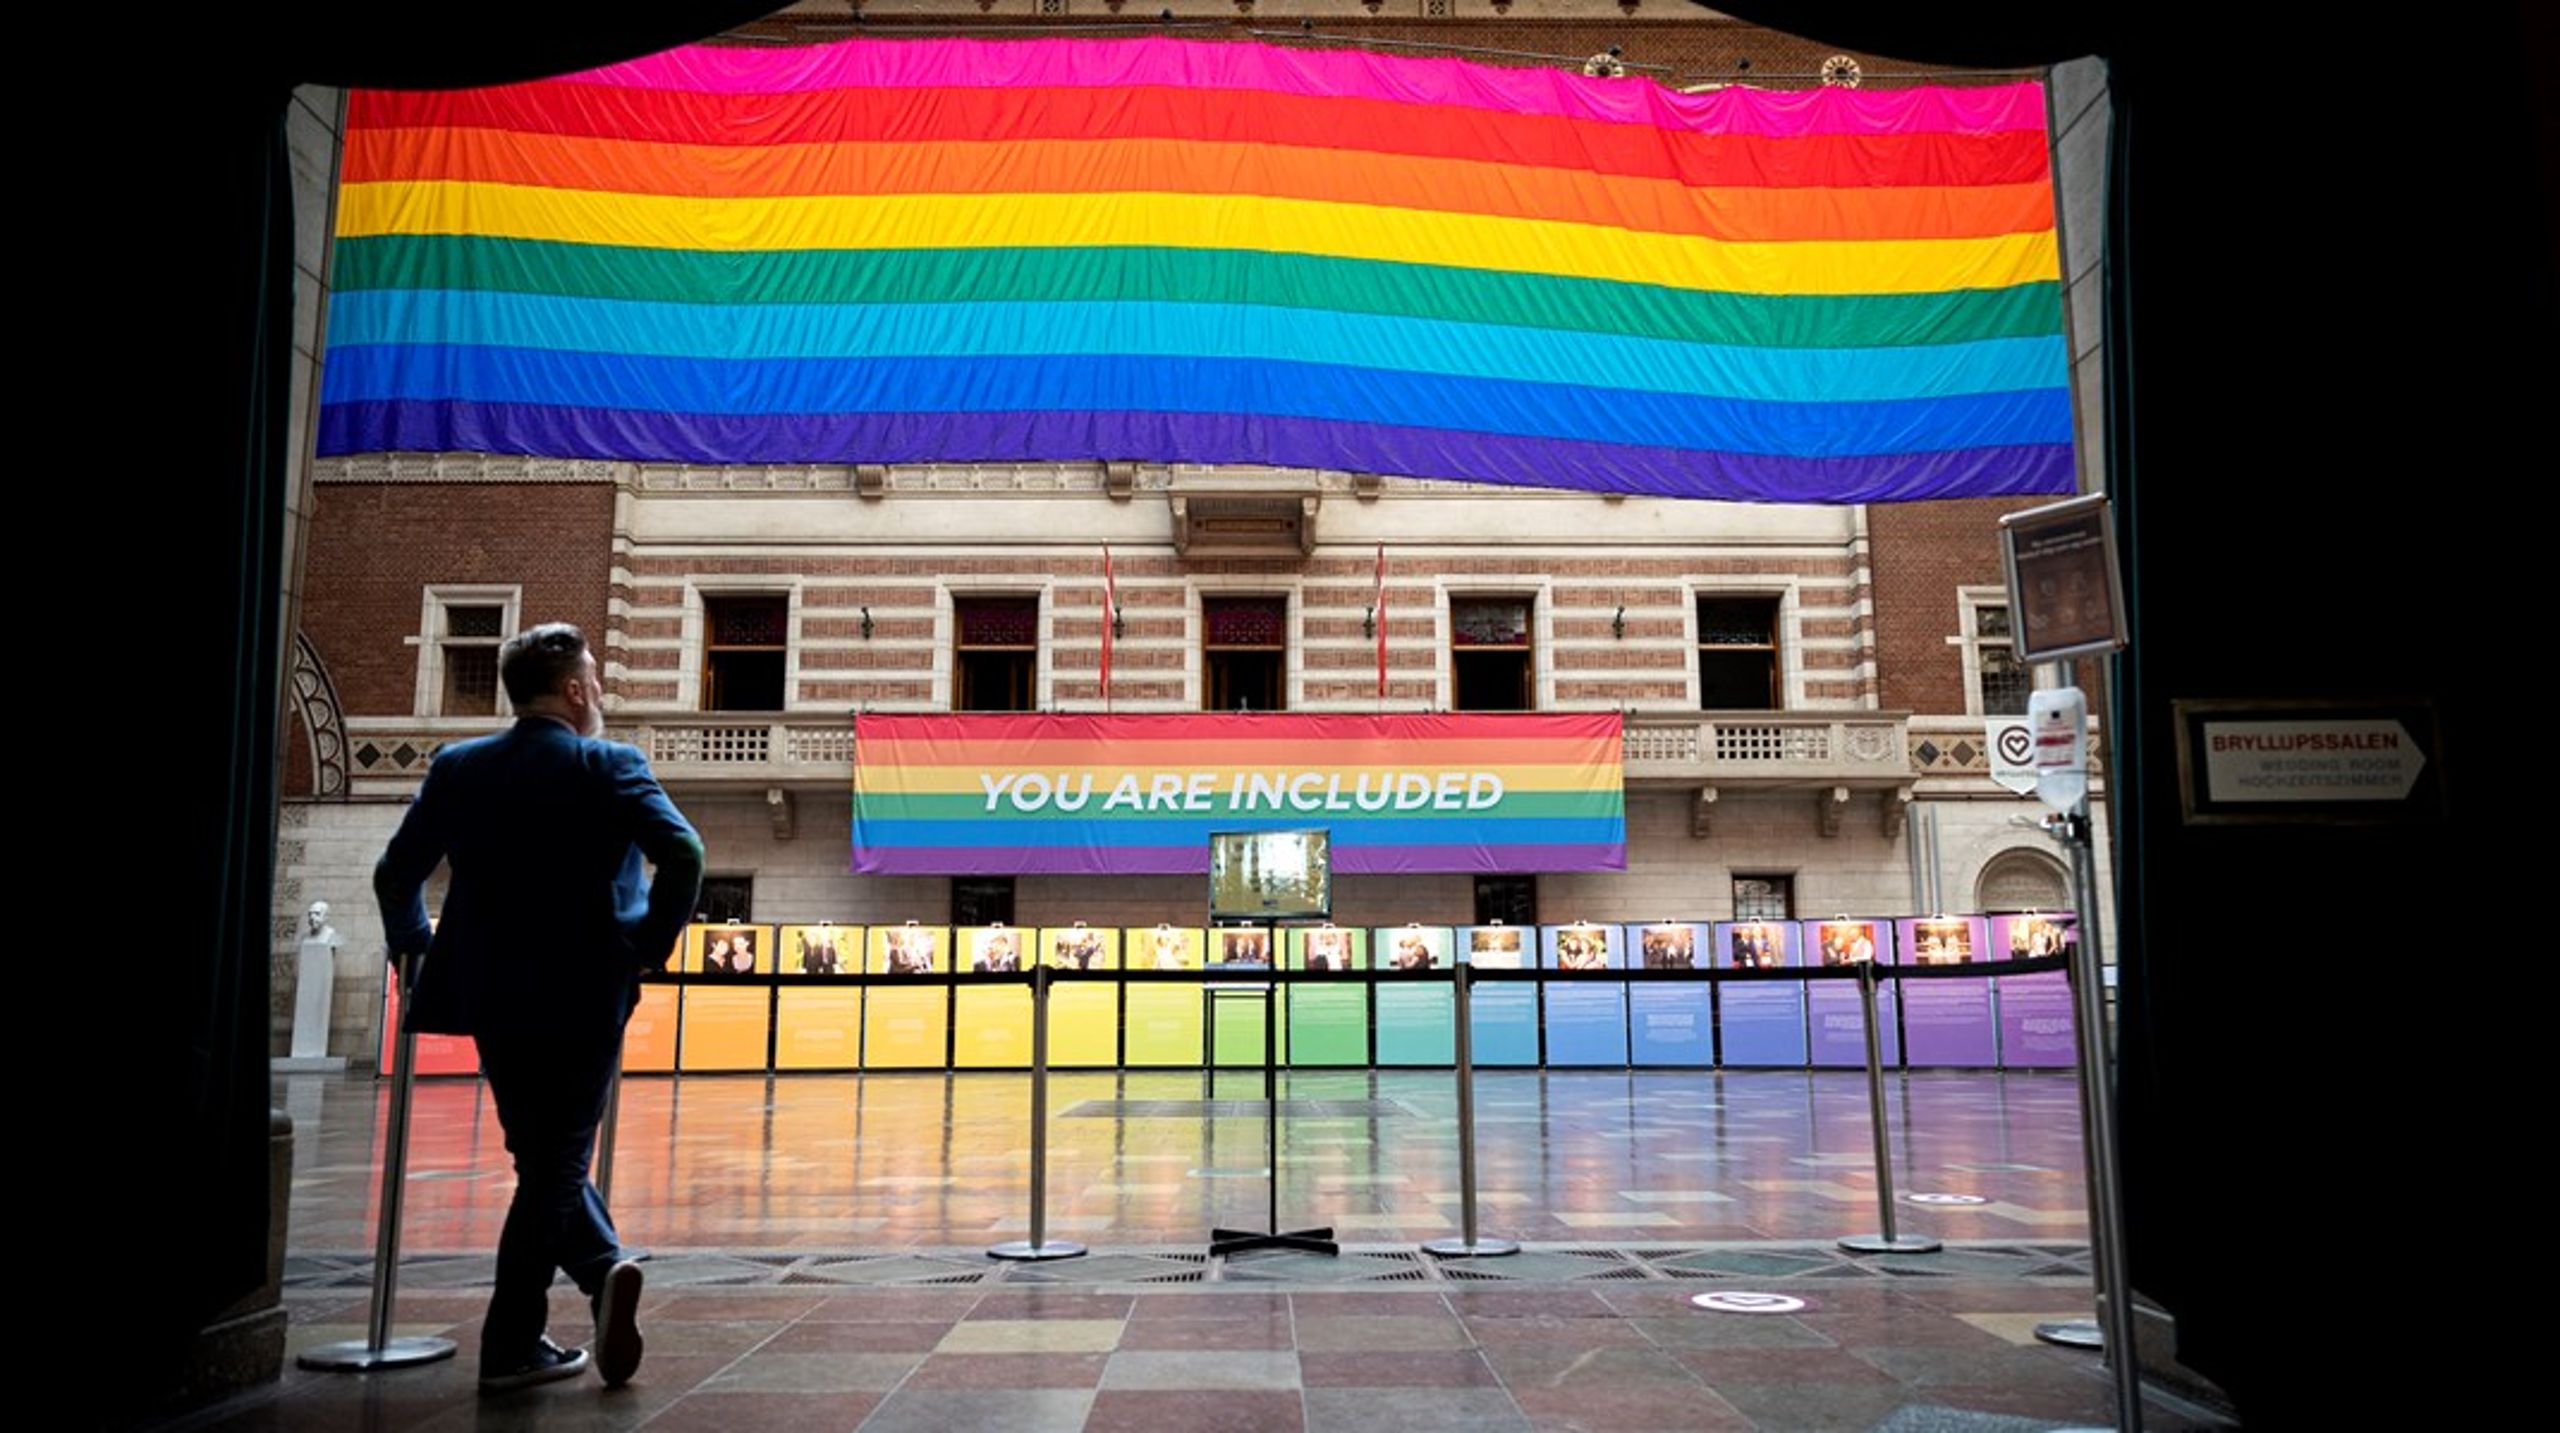 Rådhushallen blev i sommers indhyllet i regnbuens farver for at markere åbningen af World Pride og Eurogames i København.